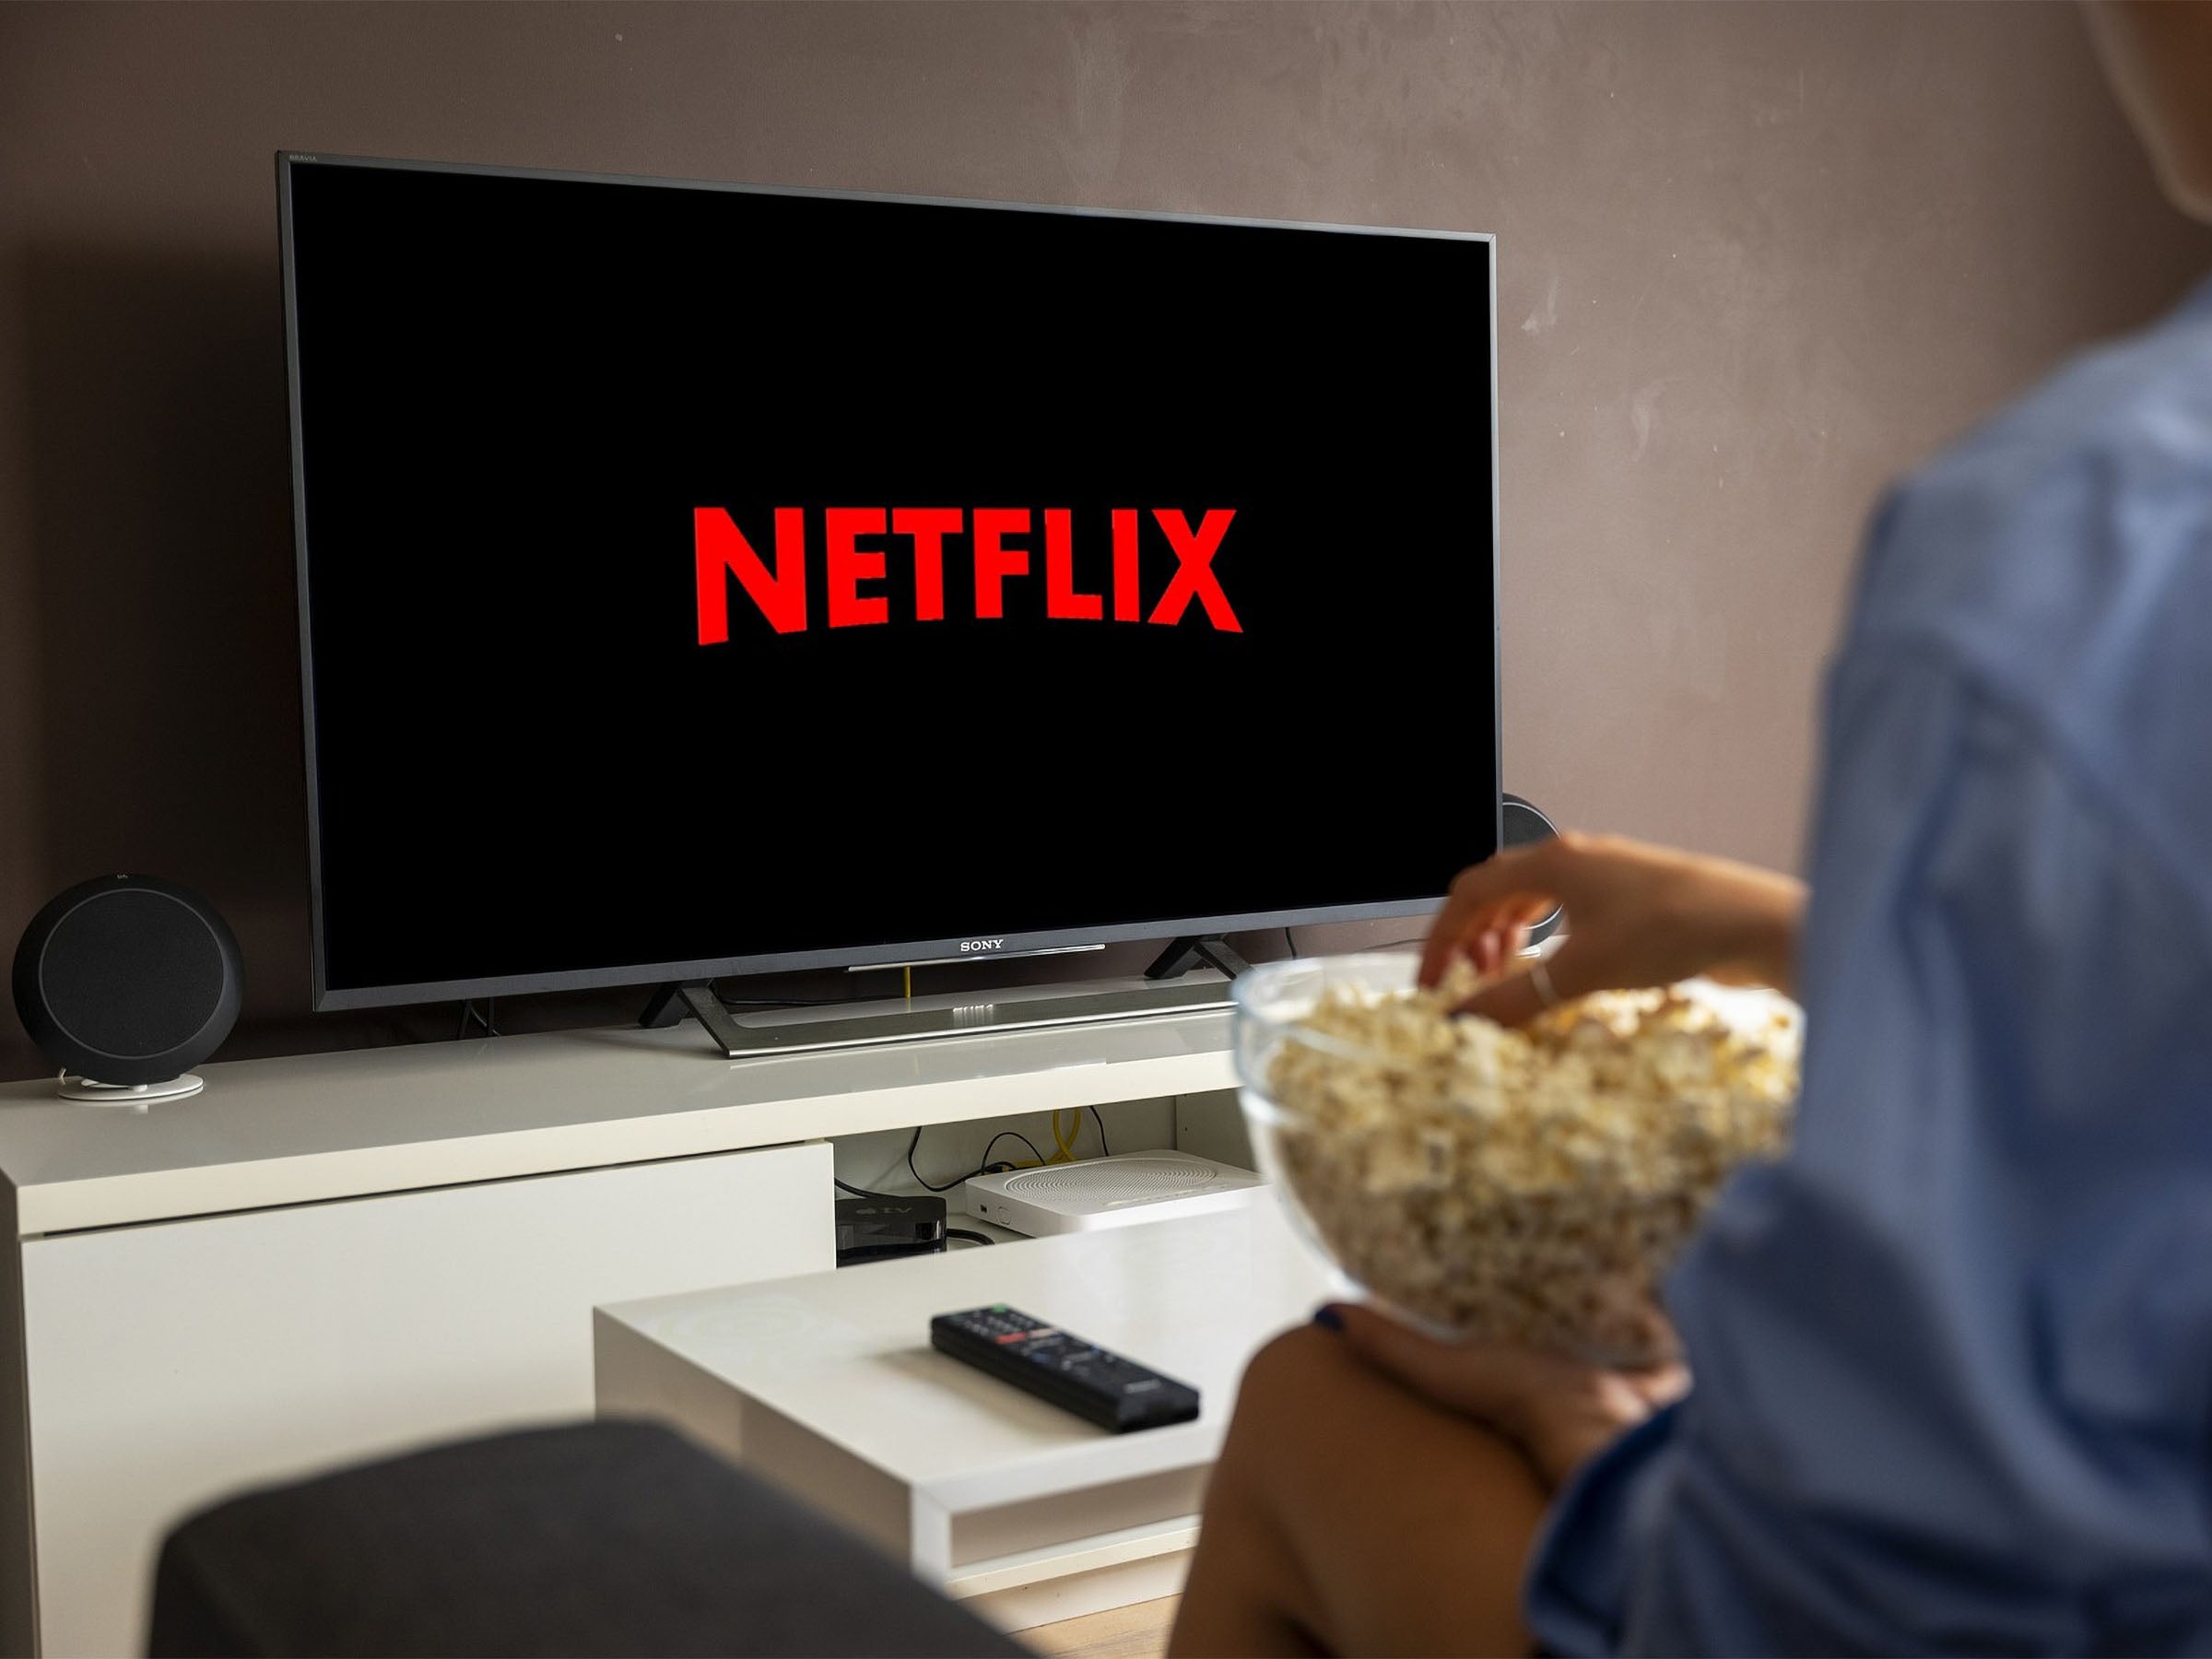 #Netflix beschert Eltern Albträume mit angekündigtem Thriller